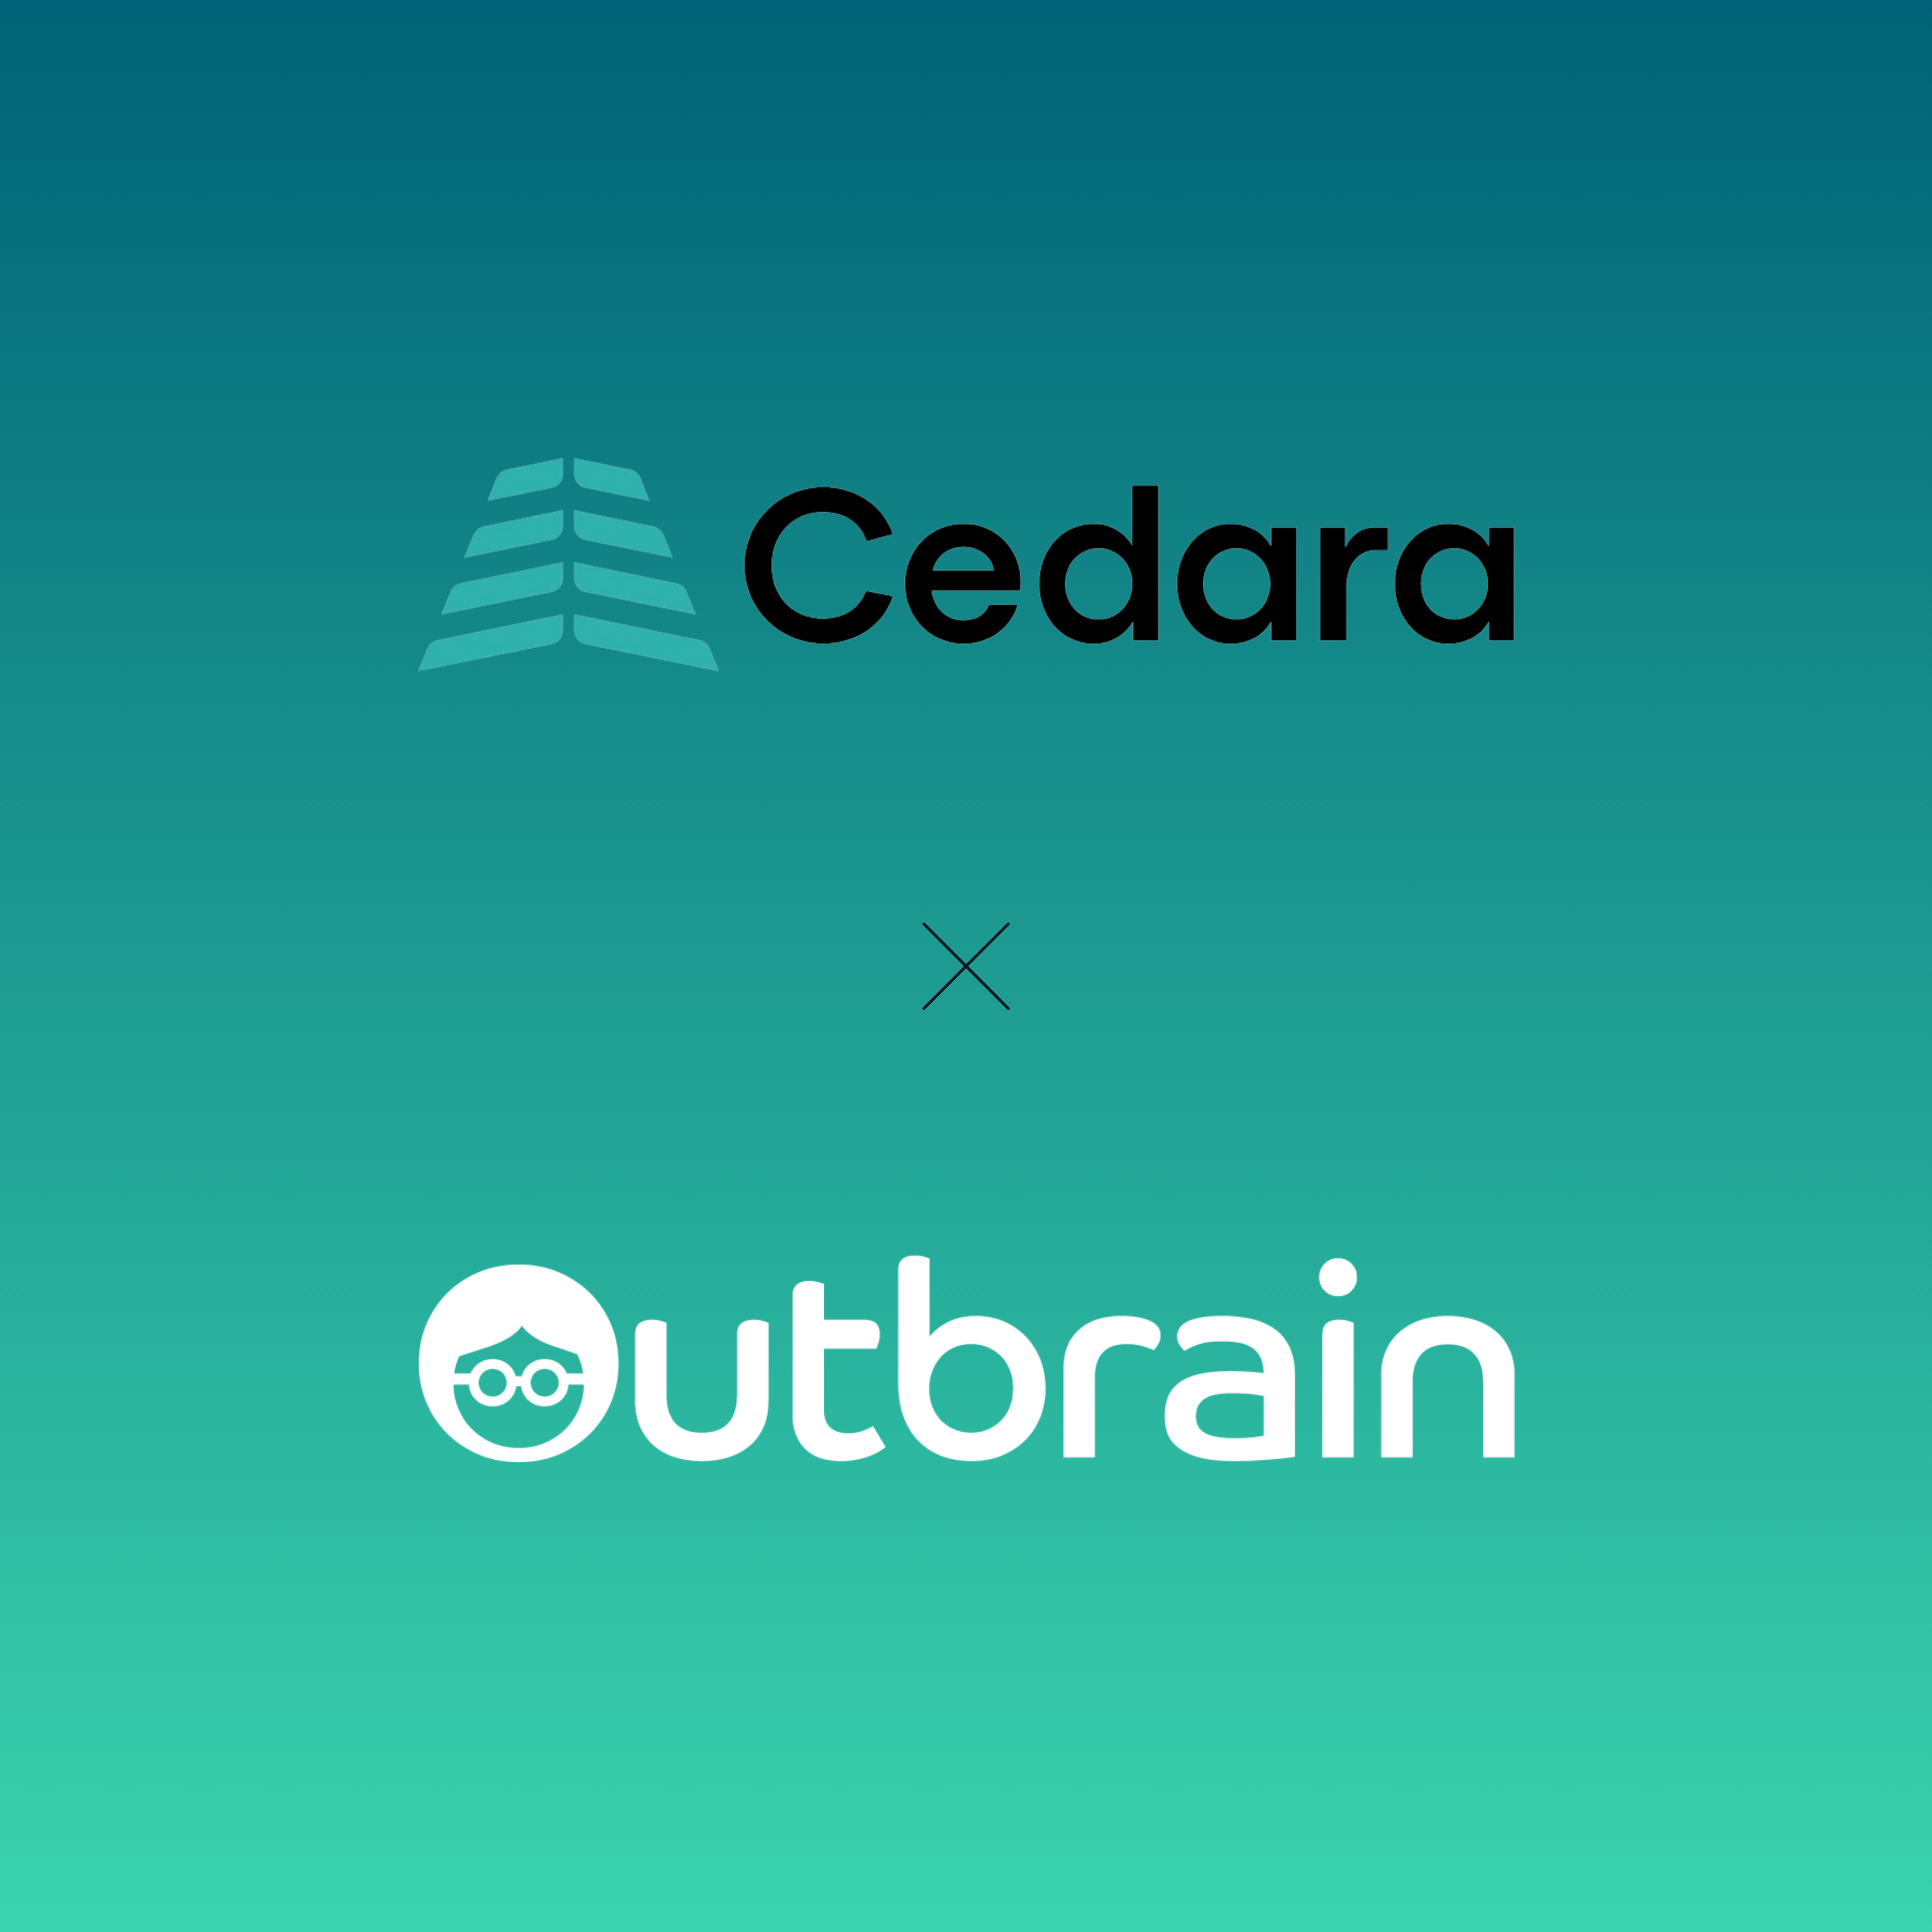 Outbrain intensiviert Bemühungen um Nachhaltigkeit und Dekarbonisierung durch Cedara-Partnerschaft und Einführung eines AI Smart-Throttling-Tools